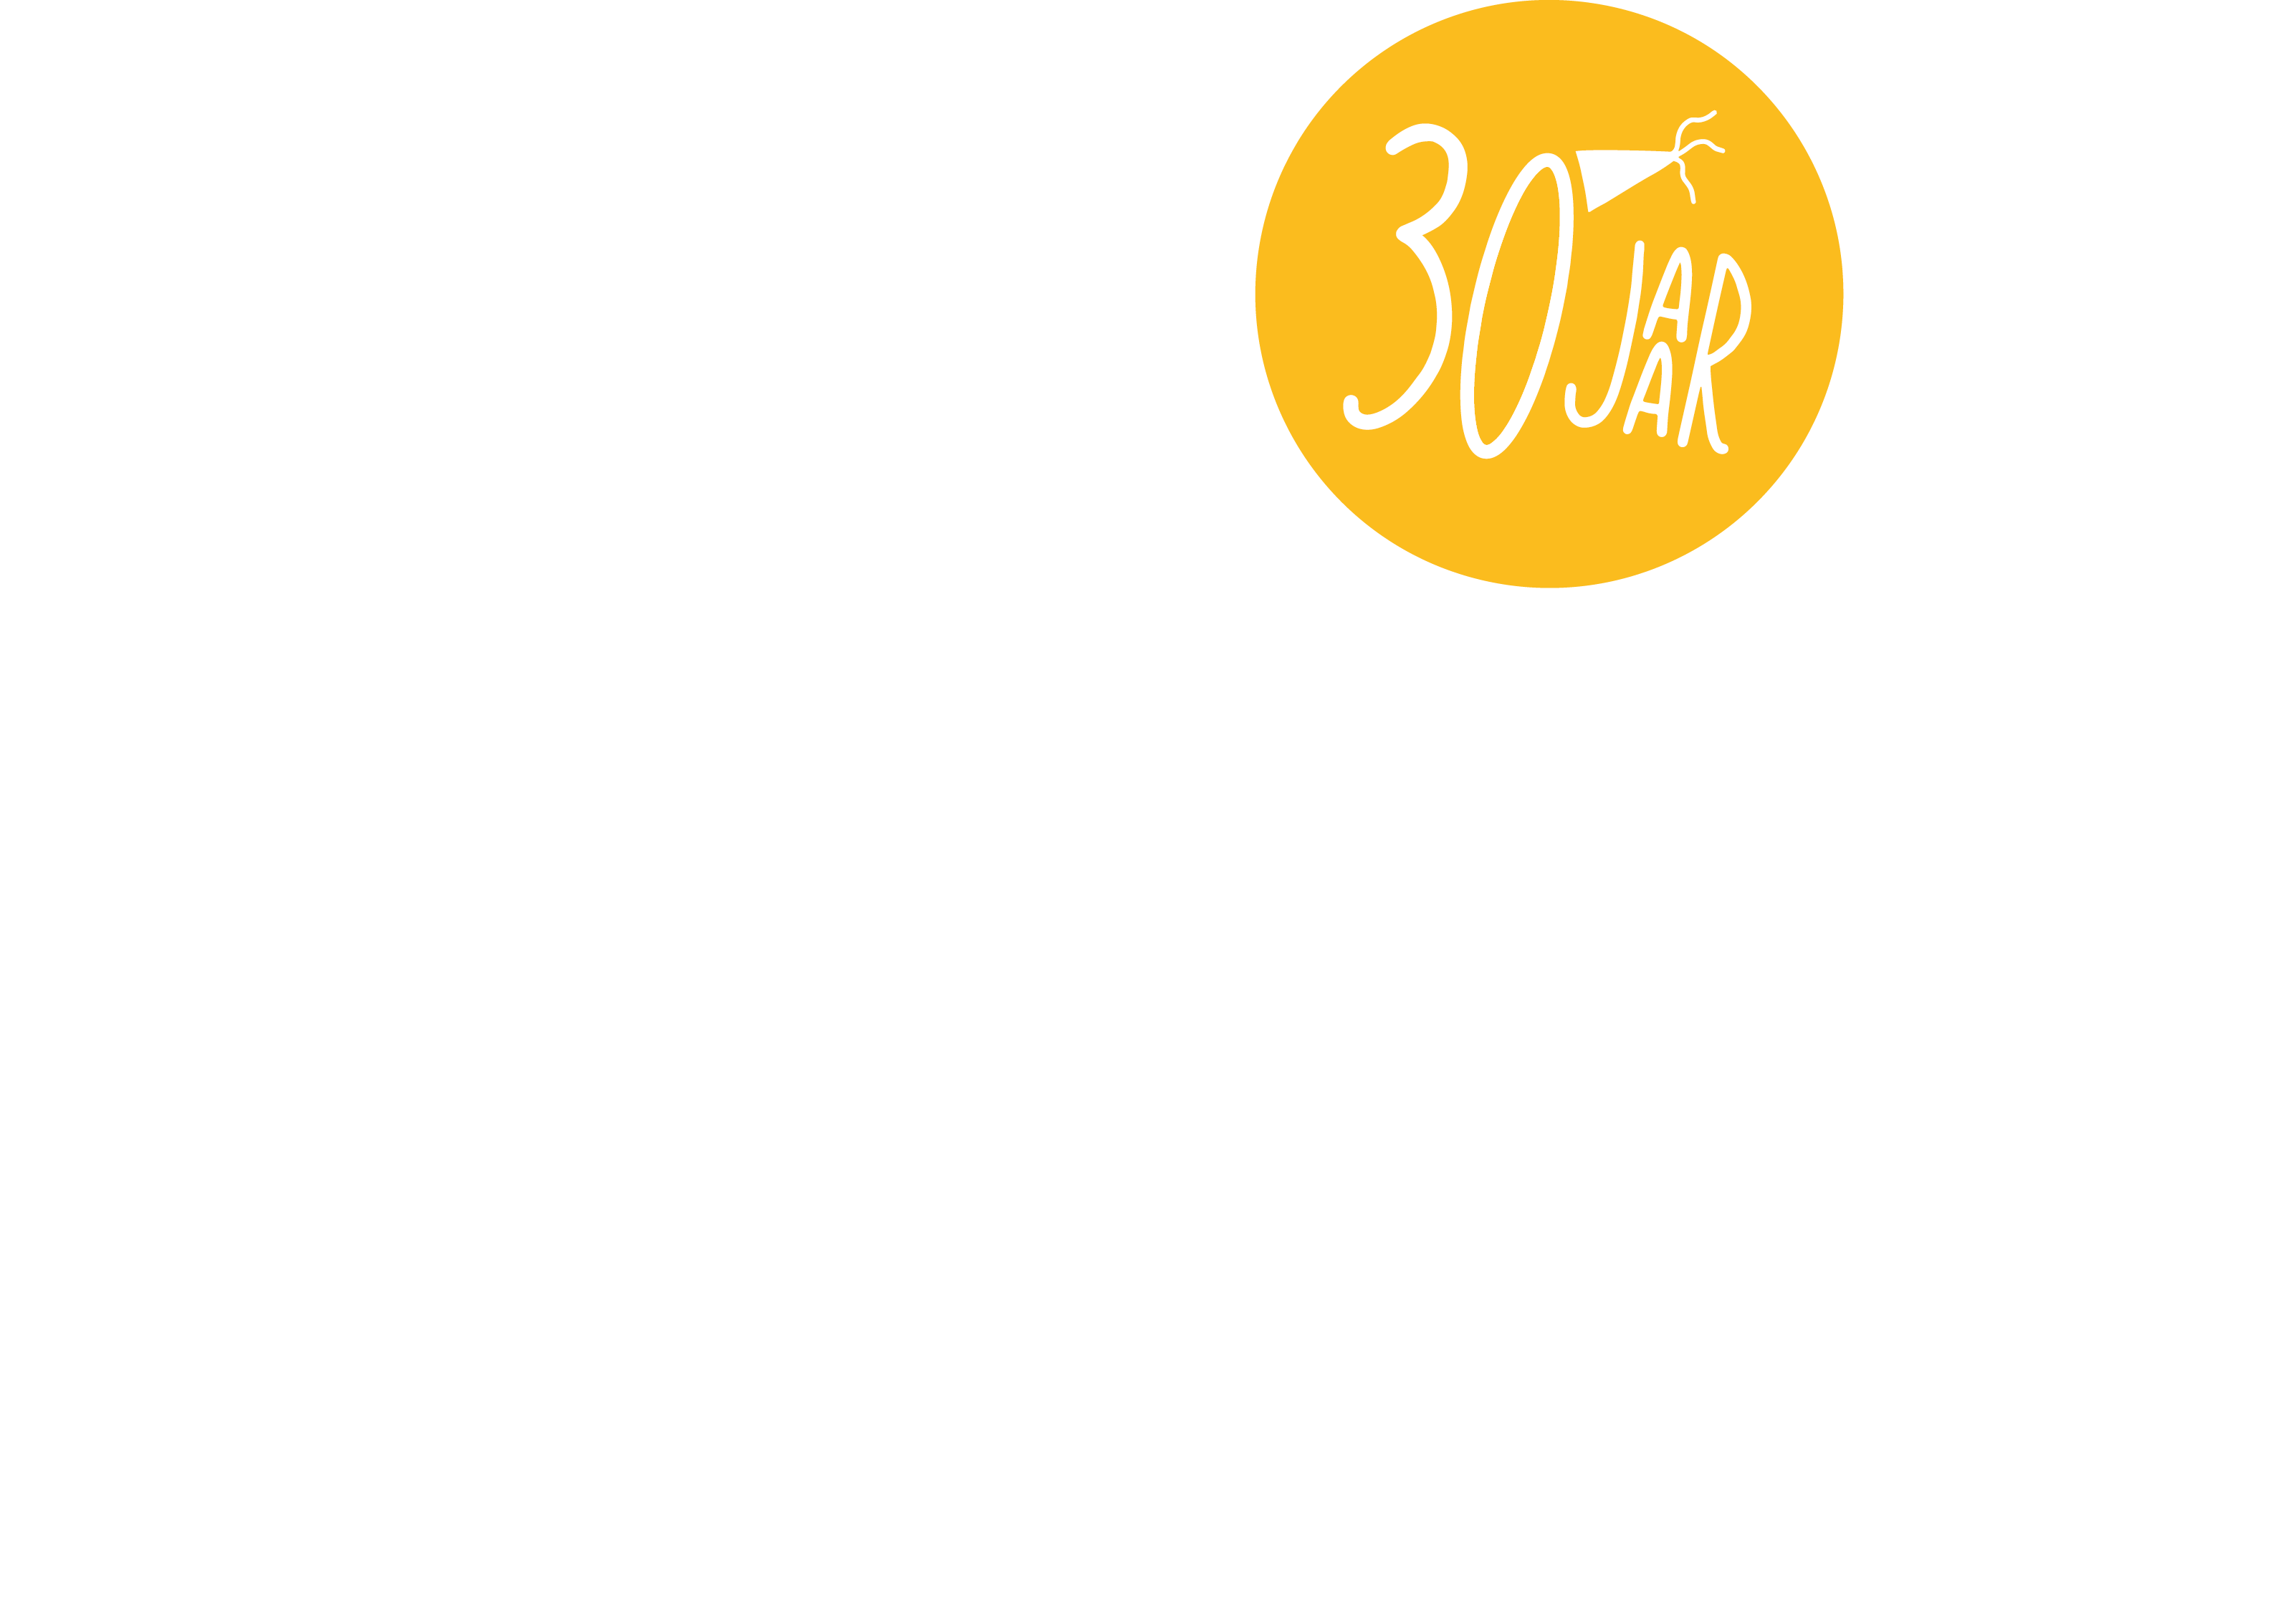 DeFretpot_logo_wit_30jaarH-A